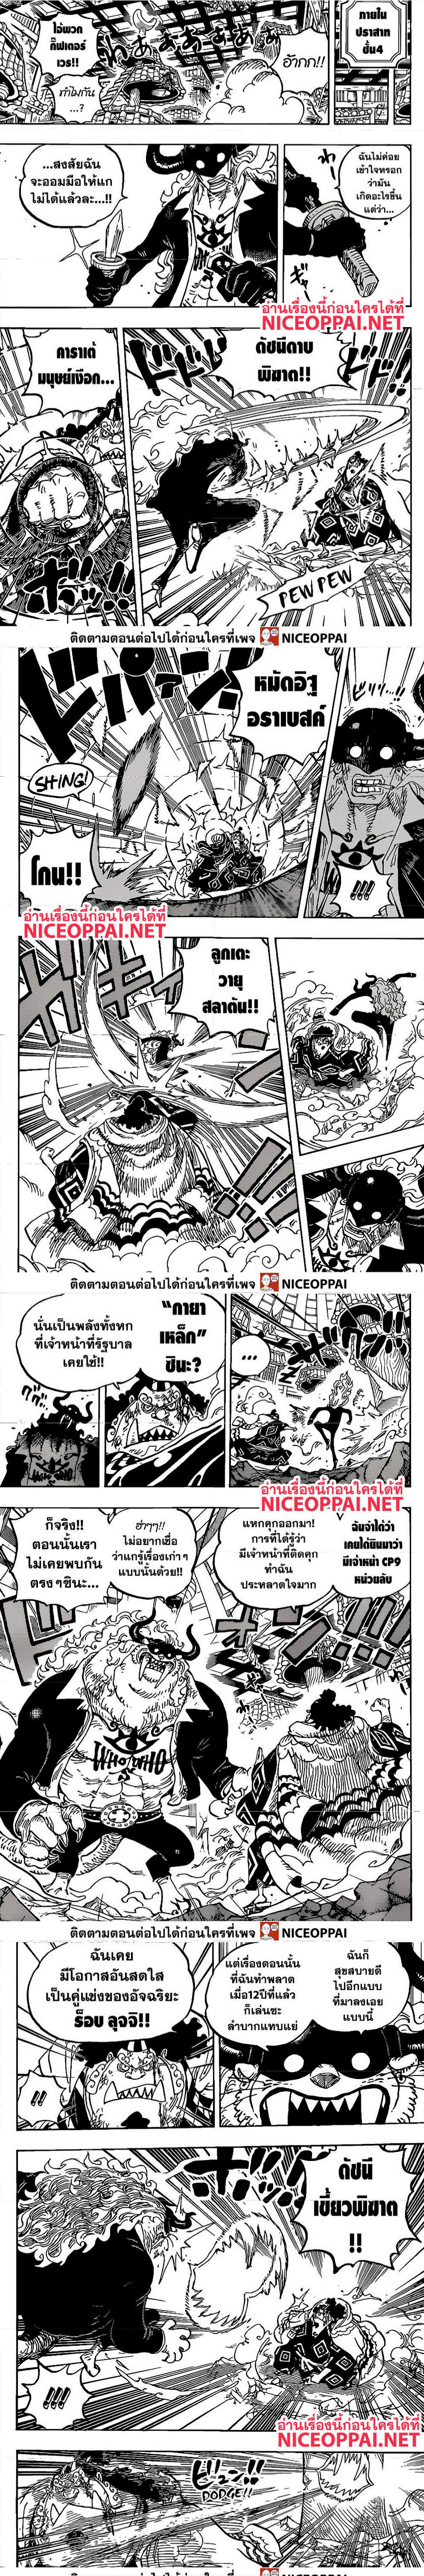 One Piece1017 (4)